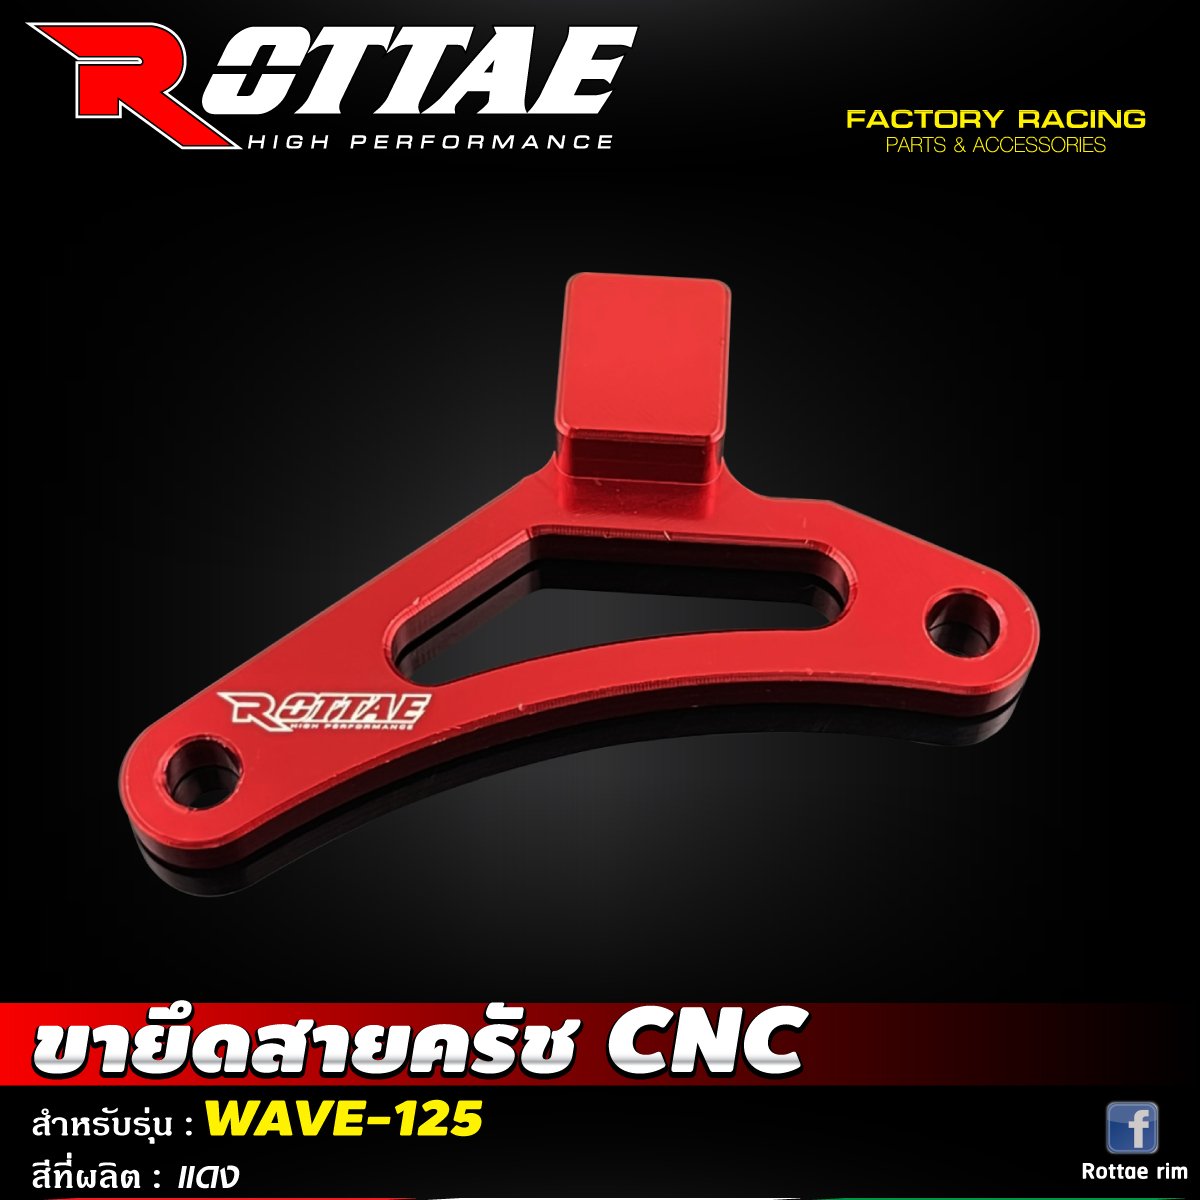 ขายึดสายครัช CNC #WAVE-125 ROTTAE สี แดง